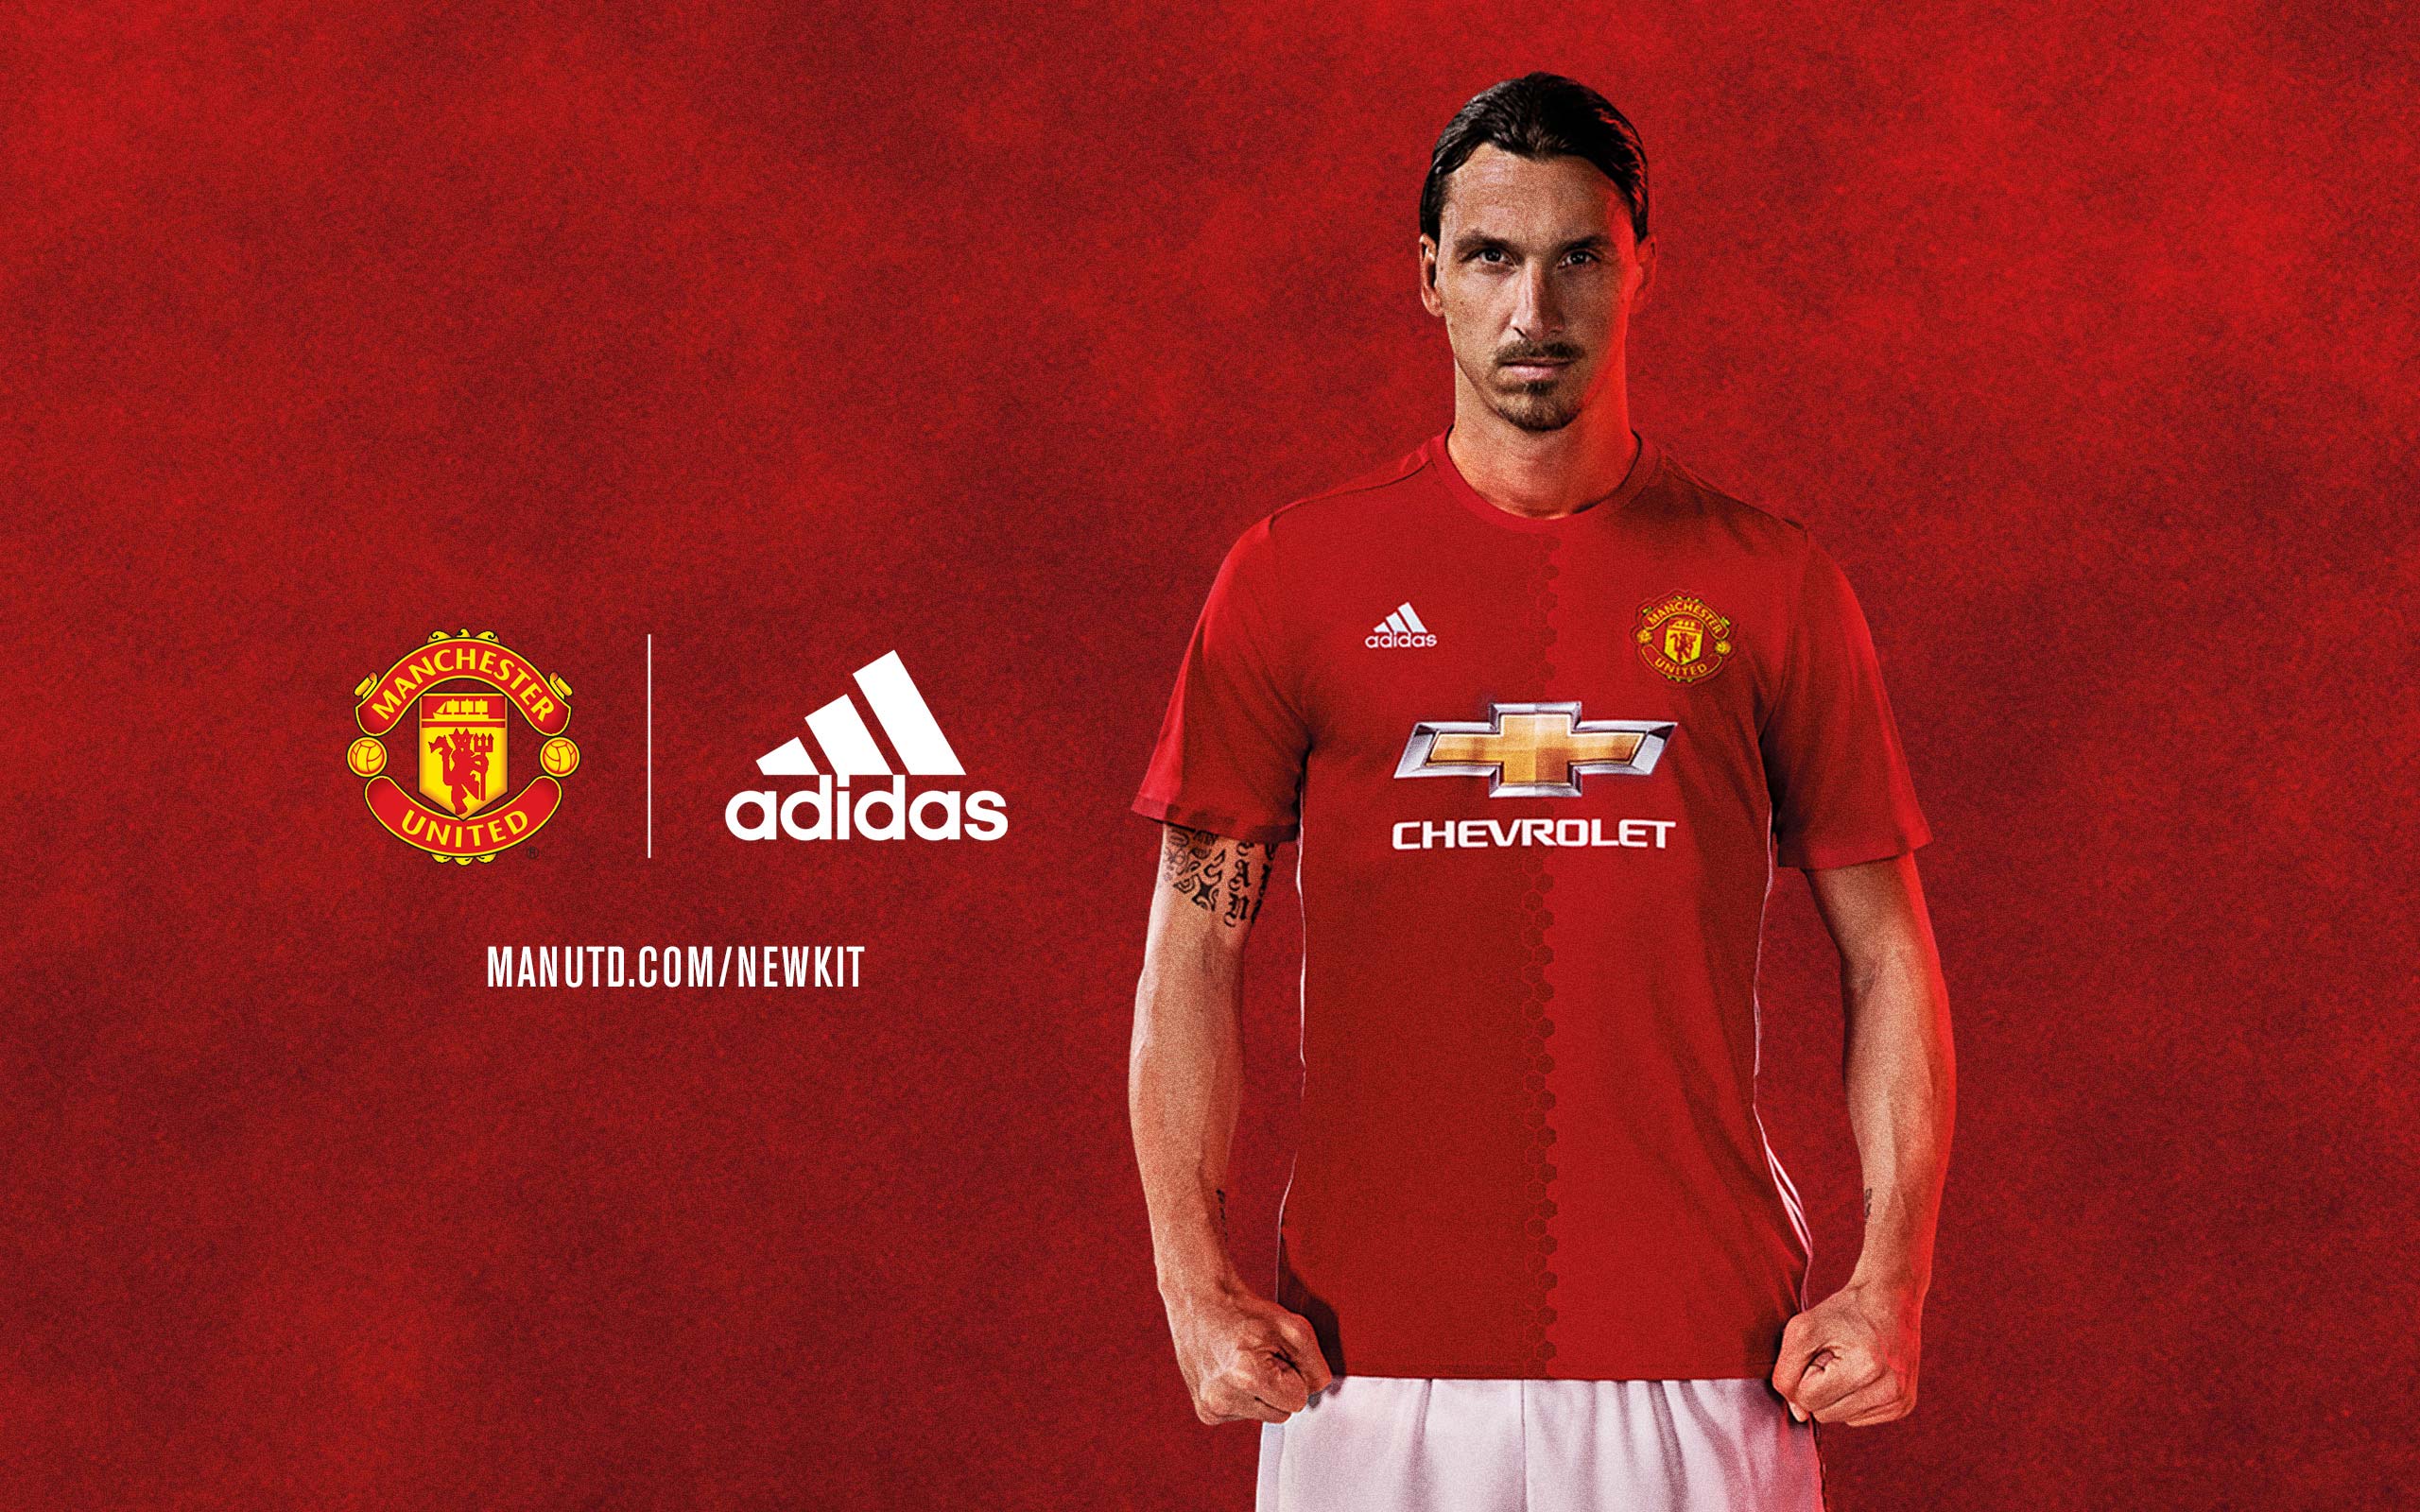 New kit wallpaper Manchester United Website